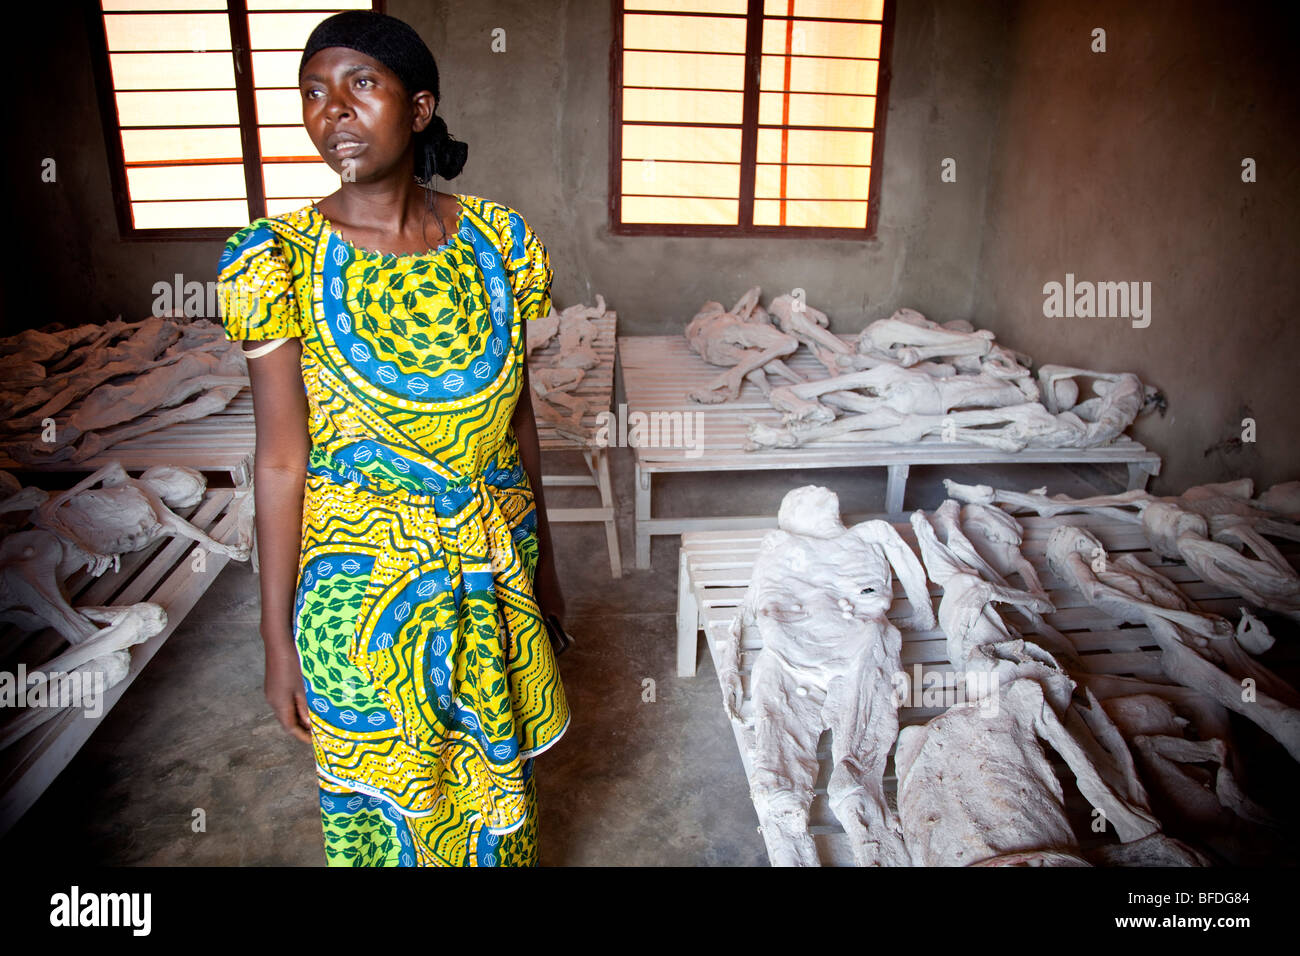 Ein Reiseleiter, der eine Mutter mit drei Kindern während des Genozids verloren, steht vor stellen auf dem Display. Stockfoto